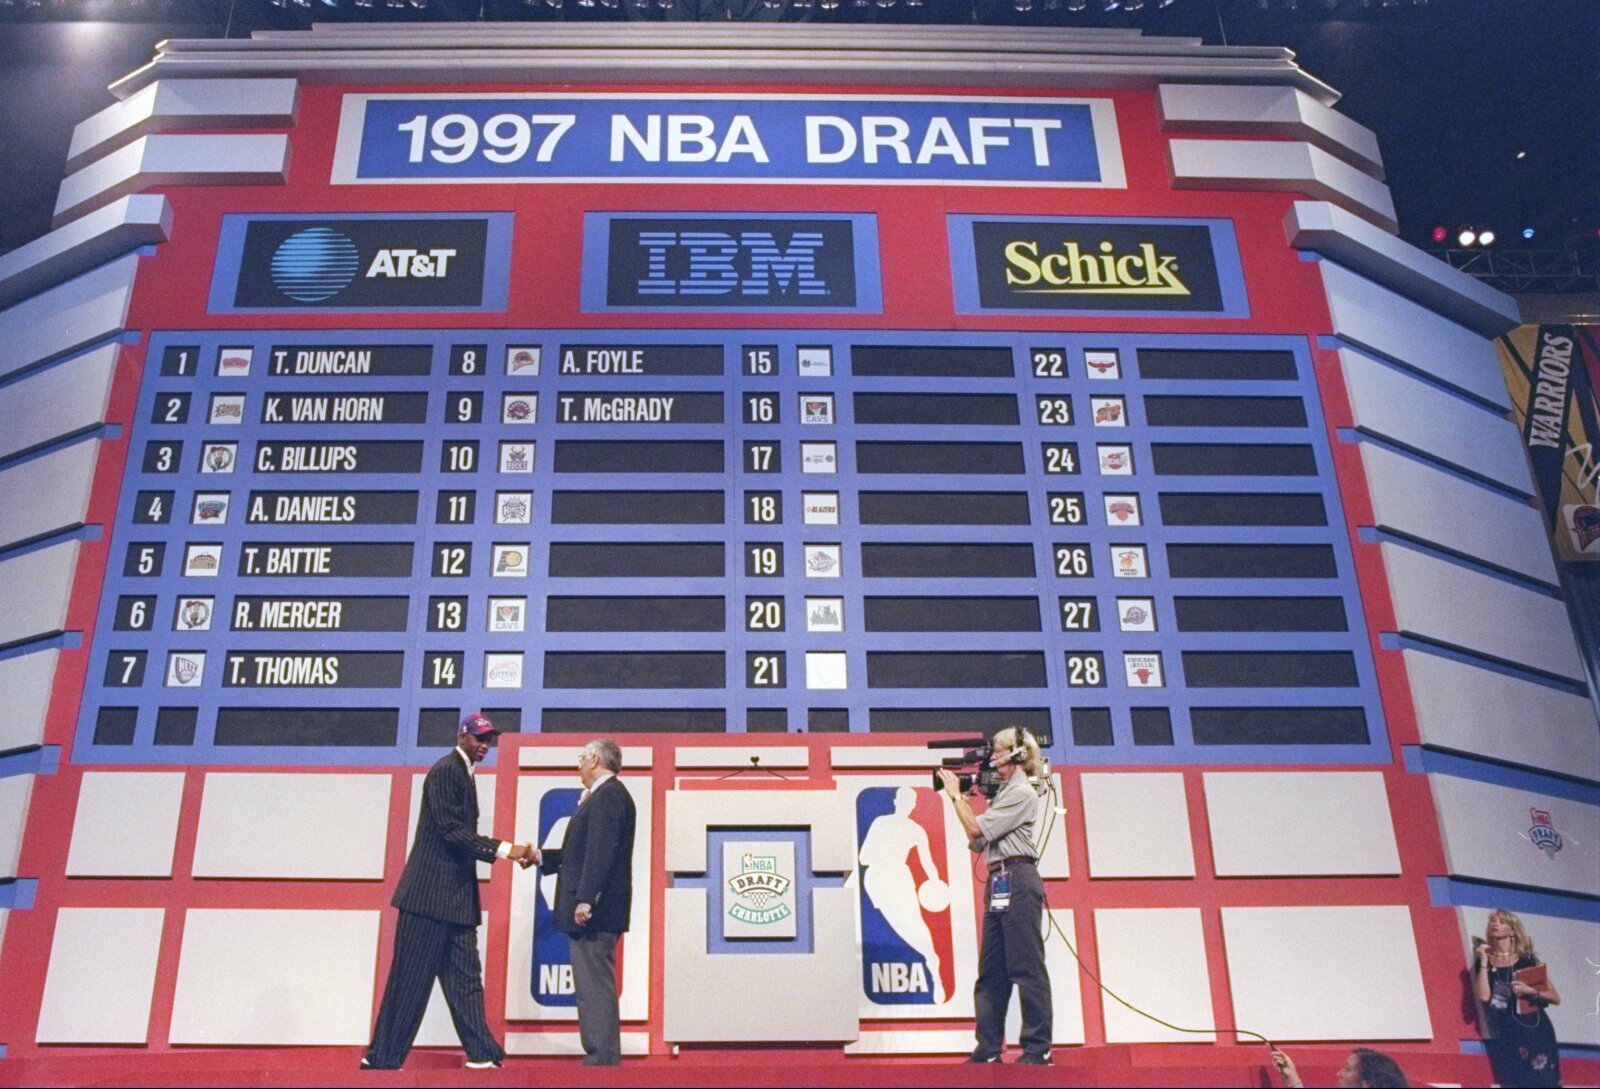 Looking back at the 1996 NBA Draft